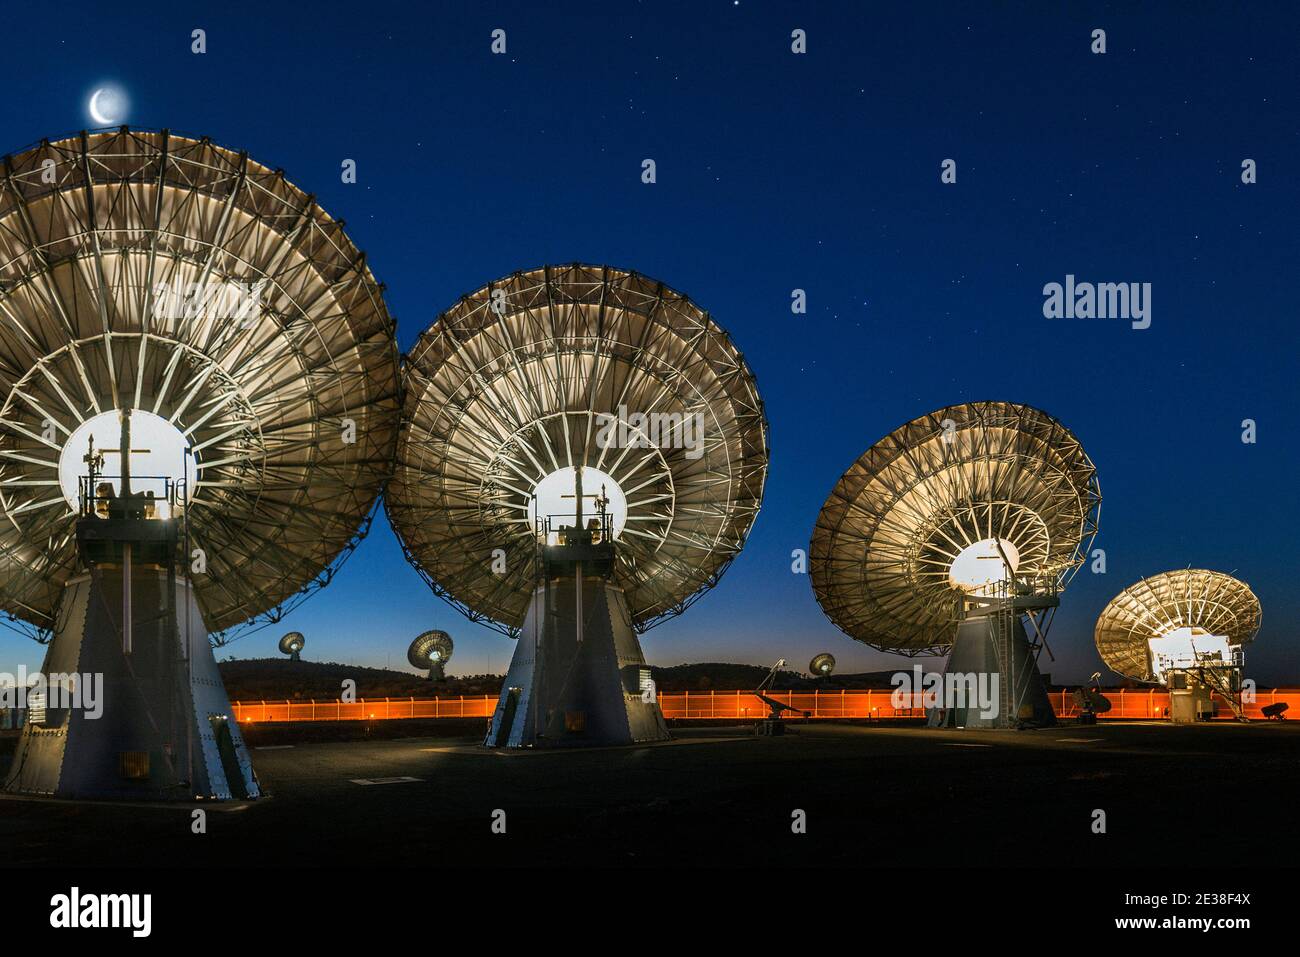 Grandi antenne per telecomunicazioni e tracciamento satellitare di notte, di fronte alla luna e alle stelle. Foto Stock